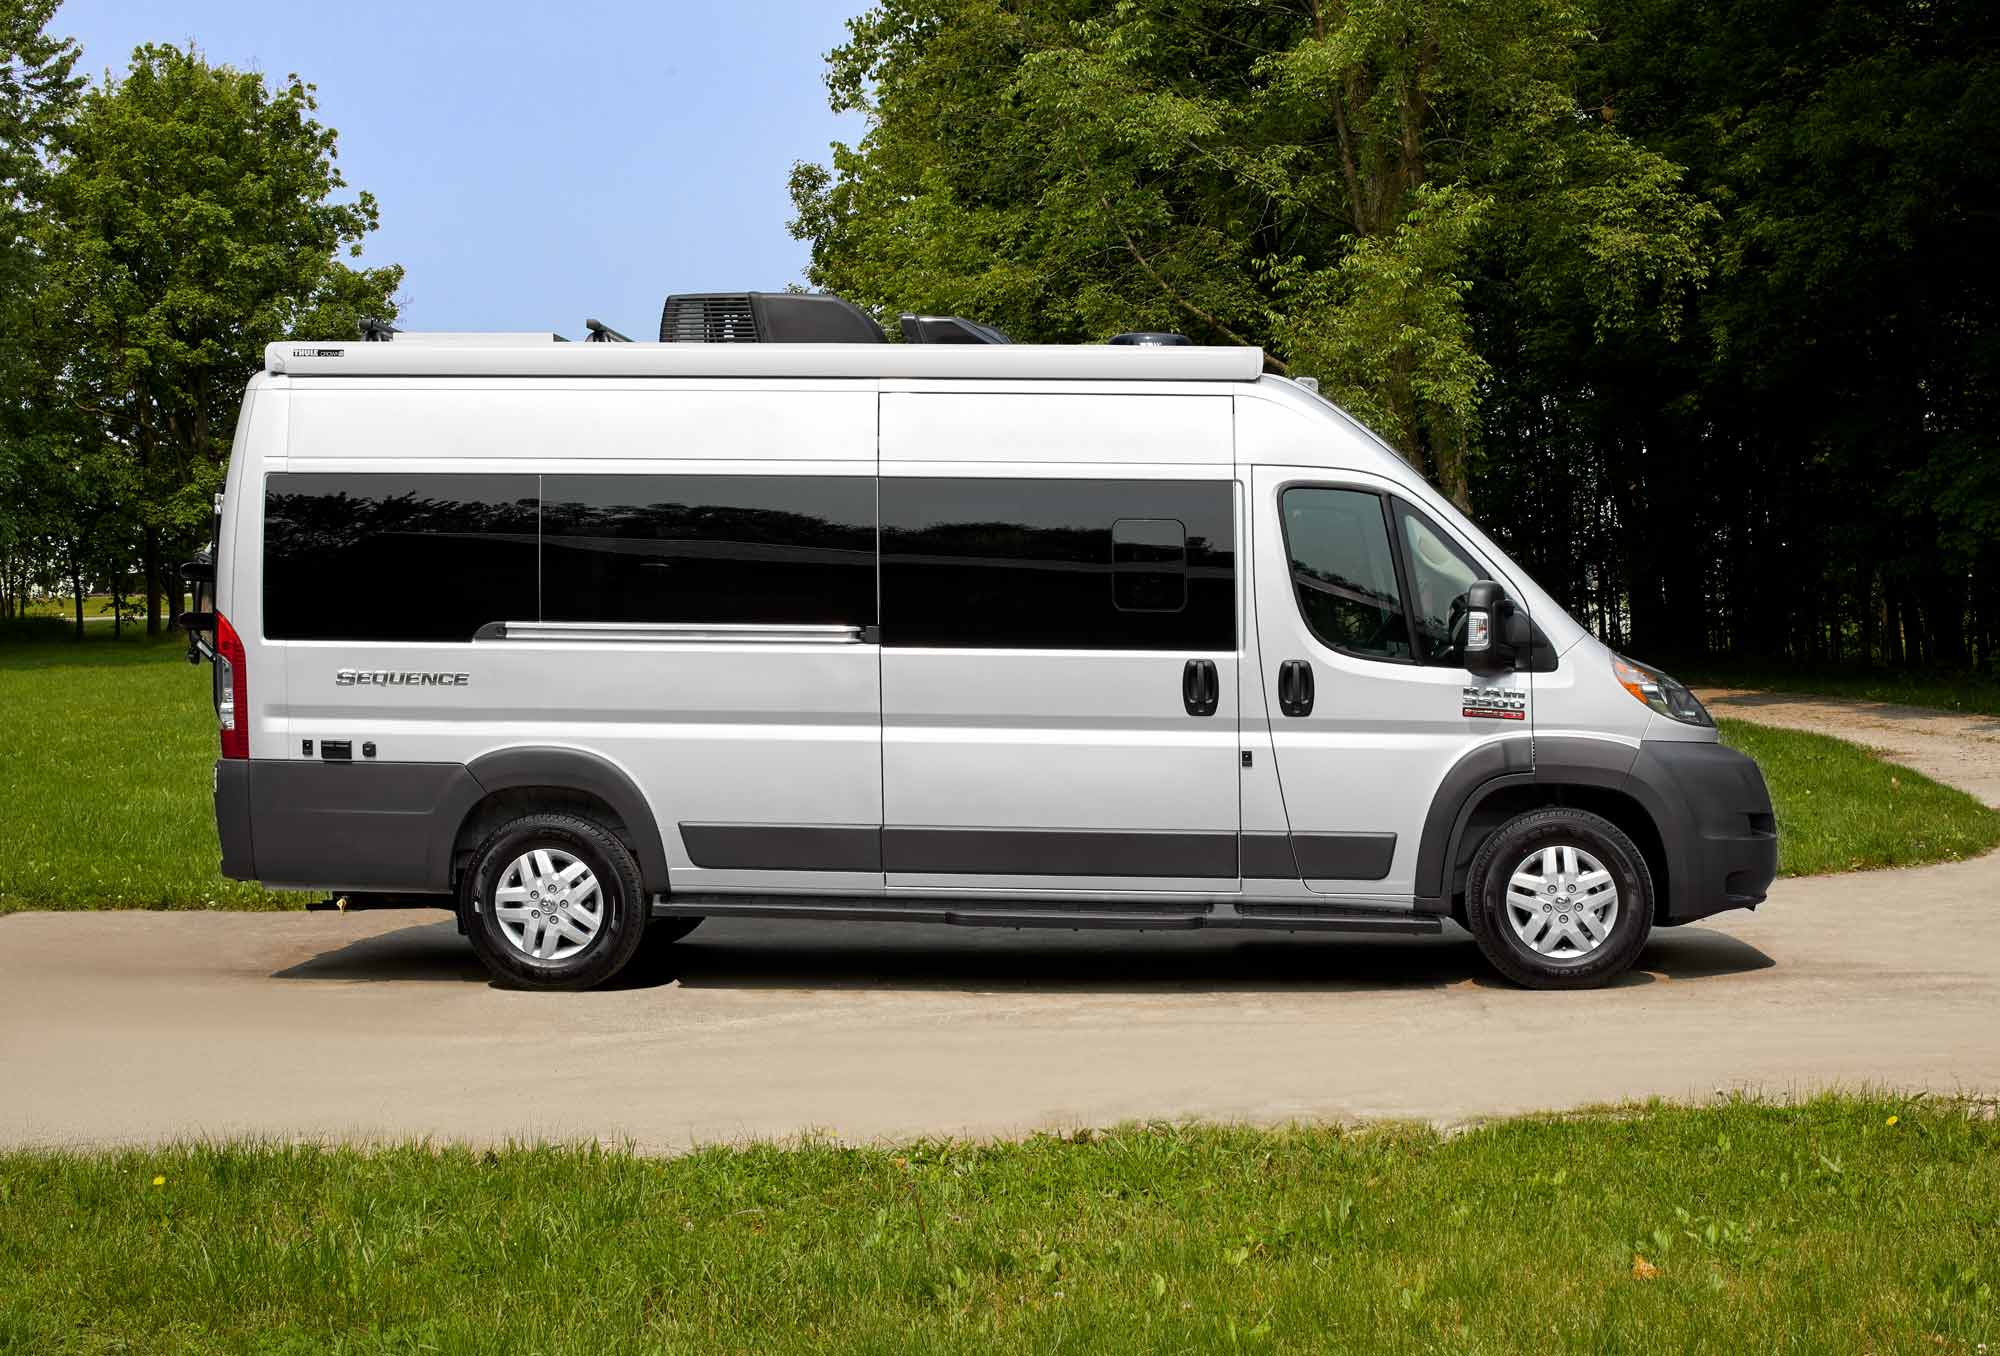 16" Rear Van Bus Minibus Campervan Motorhome Stainless Wheel Trim Covers x 2 